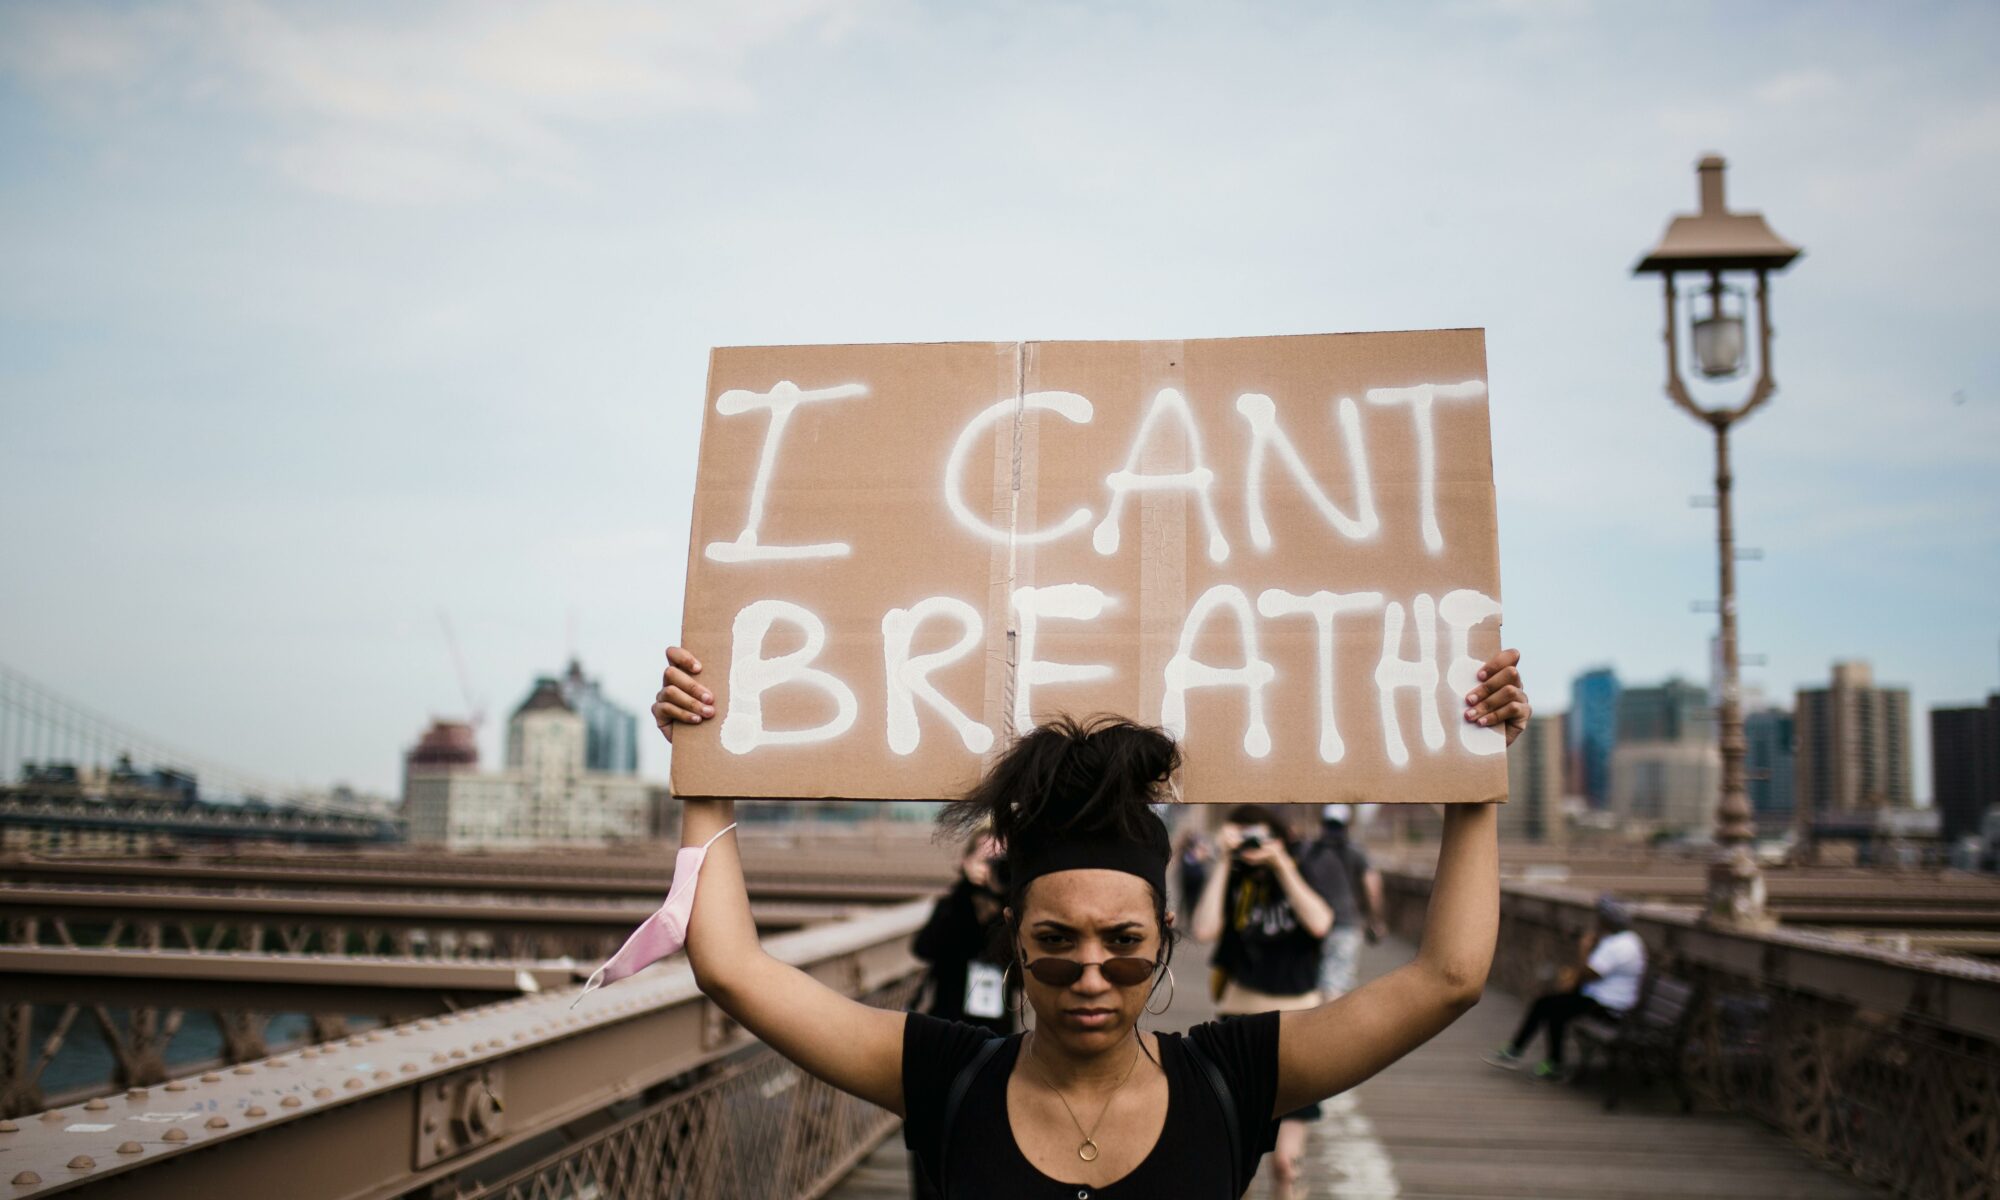 Militante brandissant une pancarte "I can't breathe".